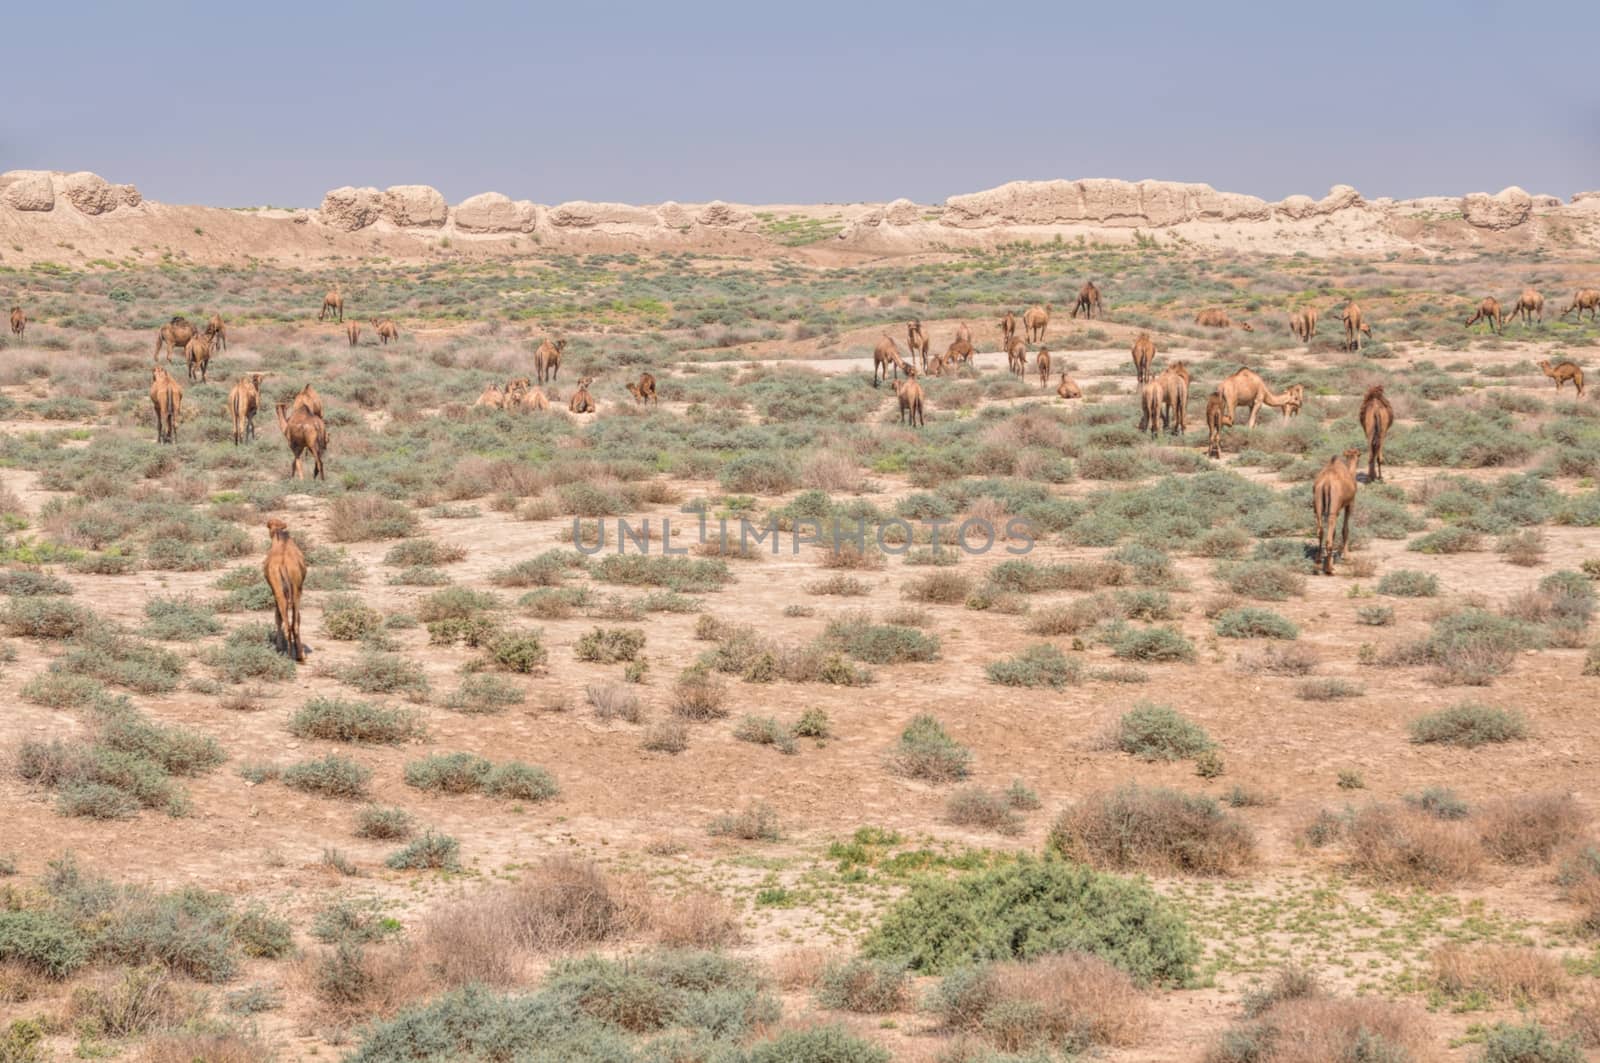 Herd of camels in desert near Merv, Turkmenistan